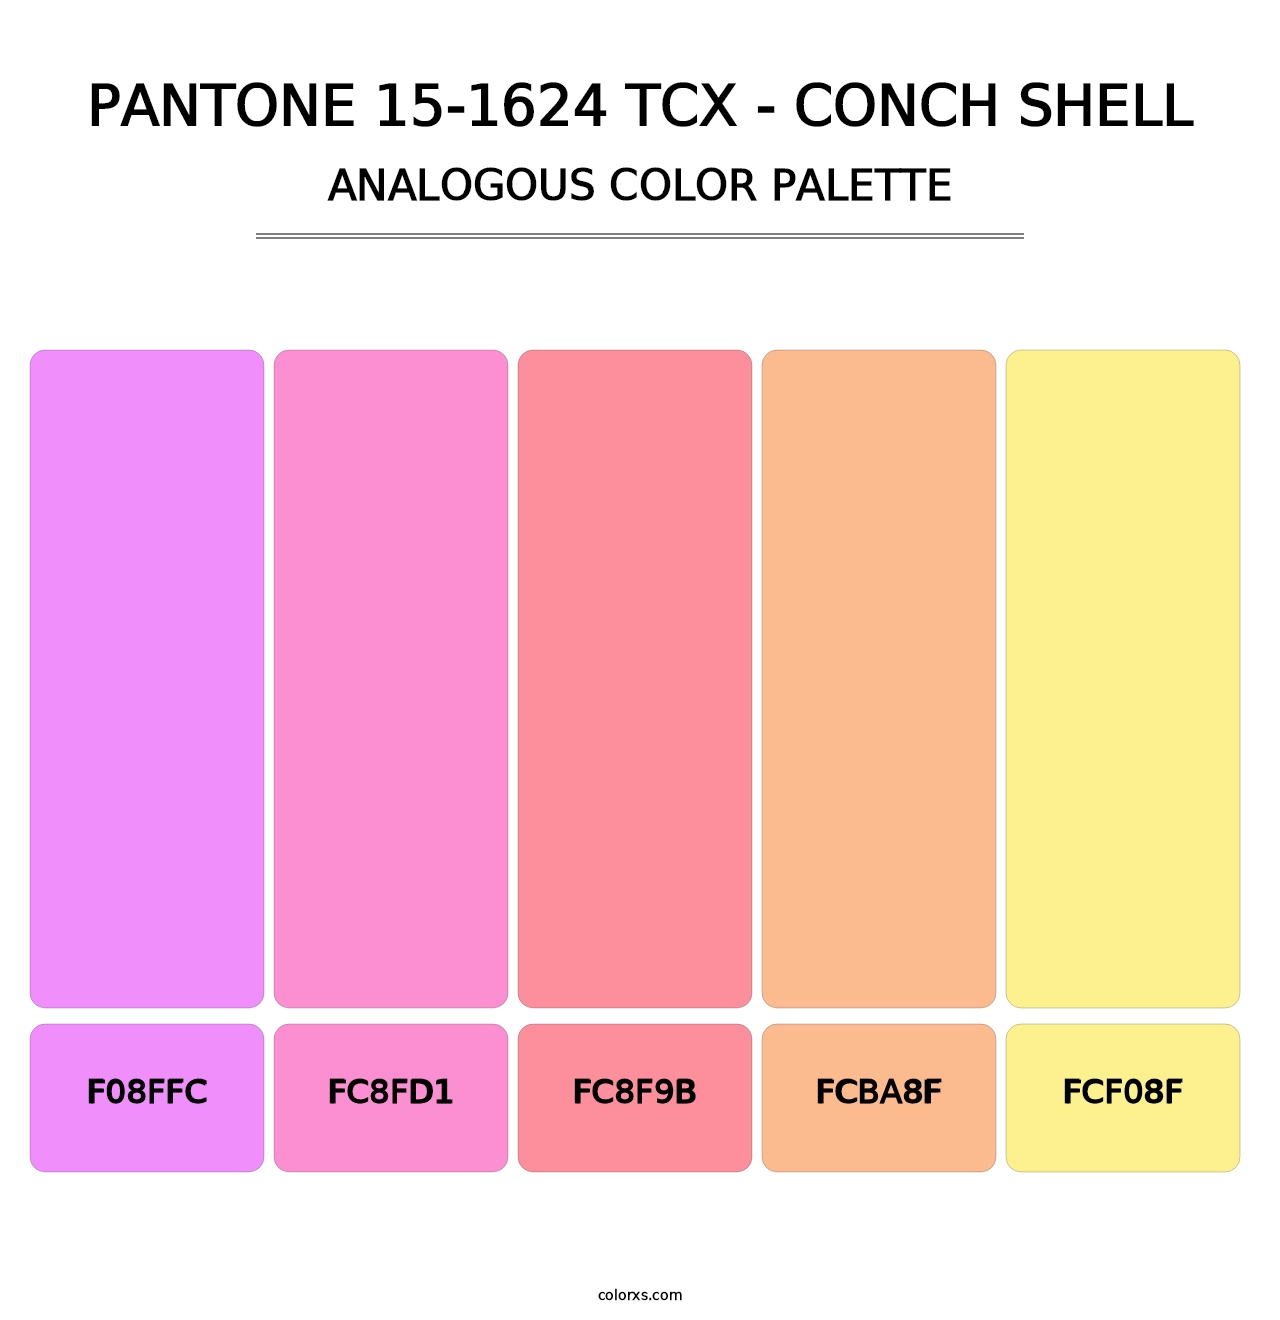 PANTONE 15-1624 TCX - Conch Shell - Analogous Color Palette